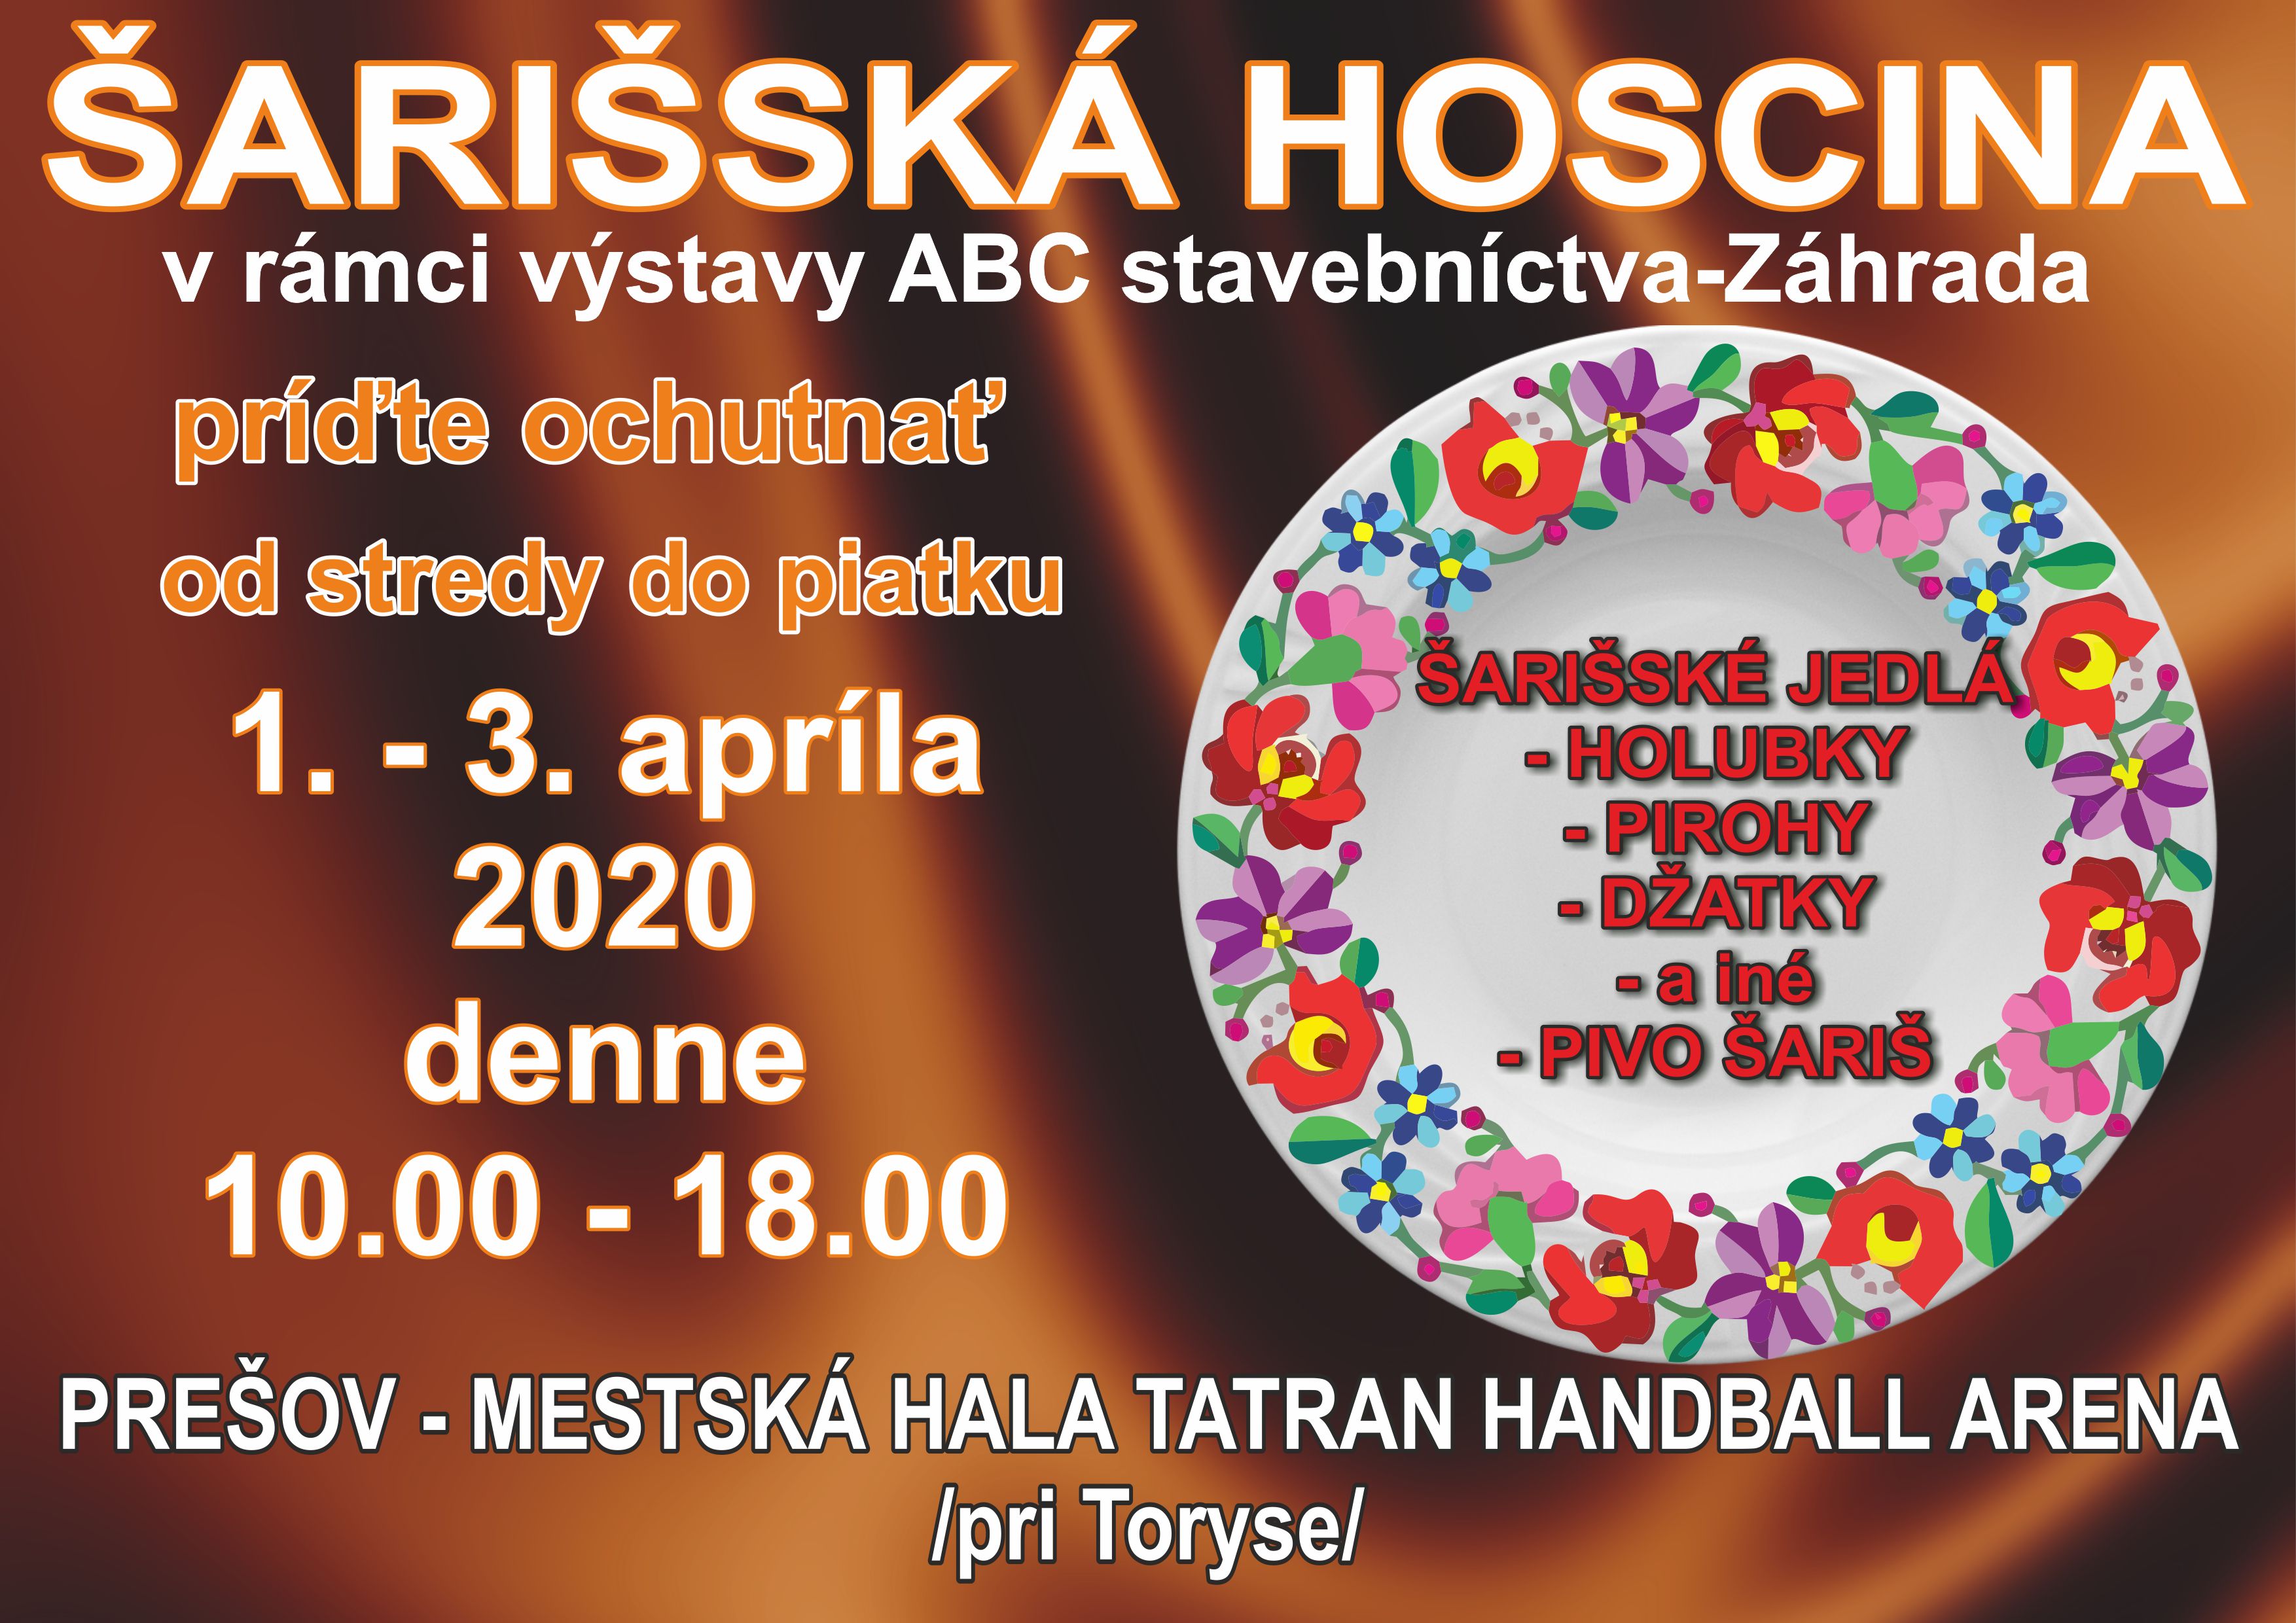 Šarišská hoscina Prešov 2020